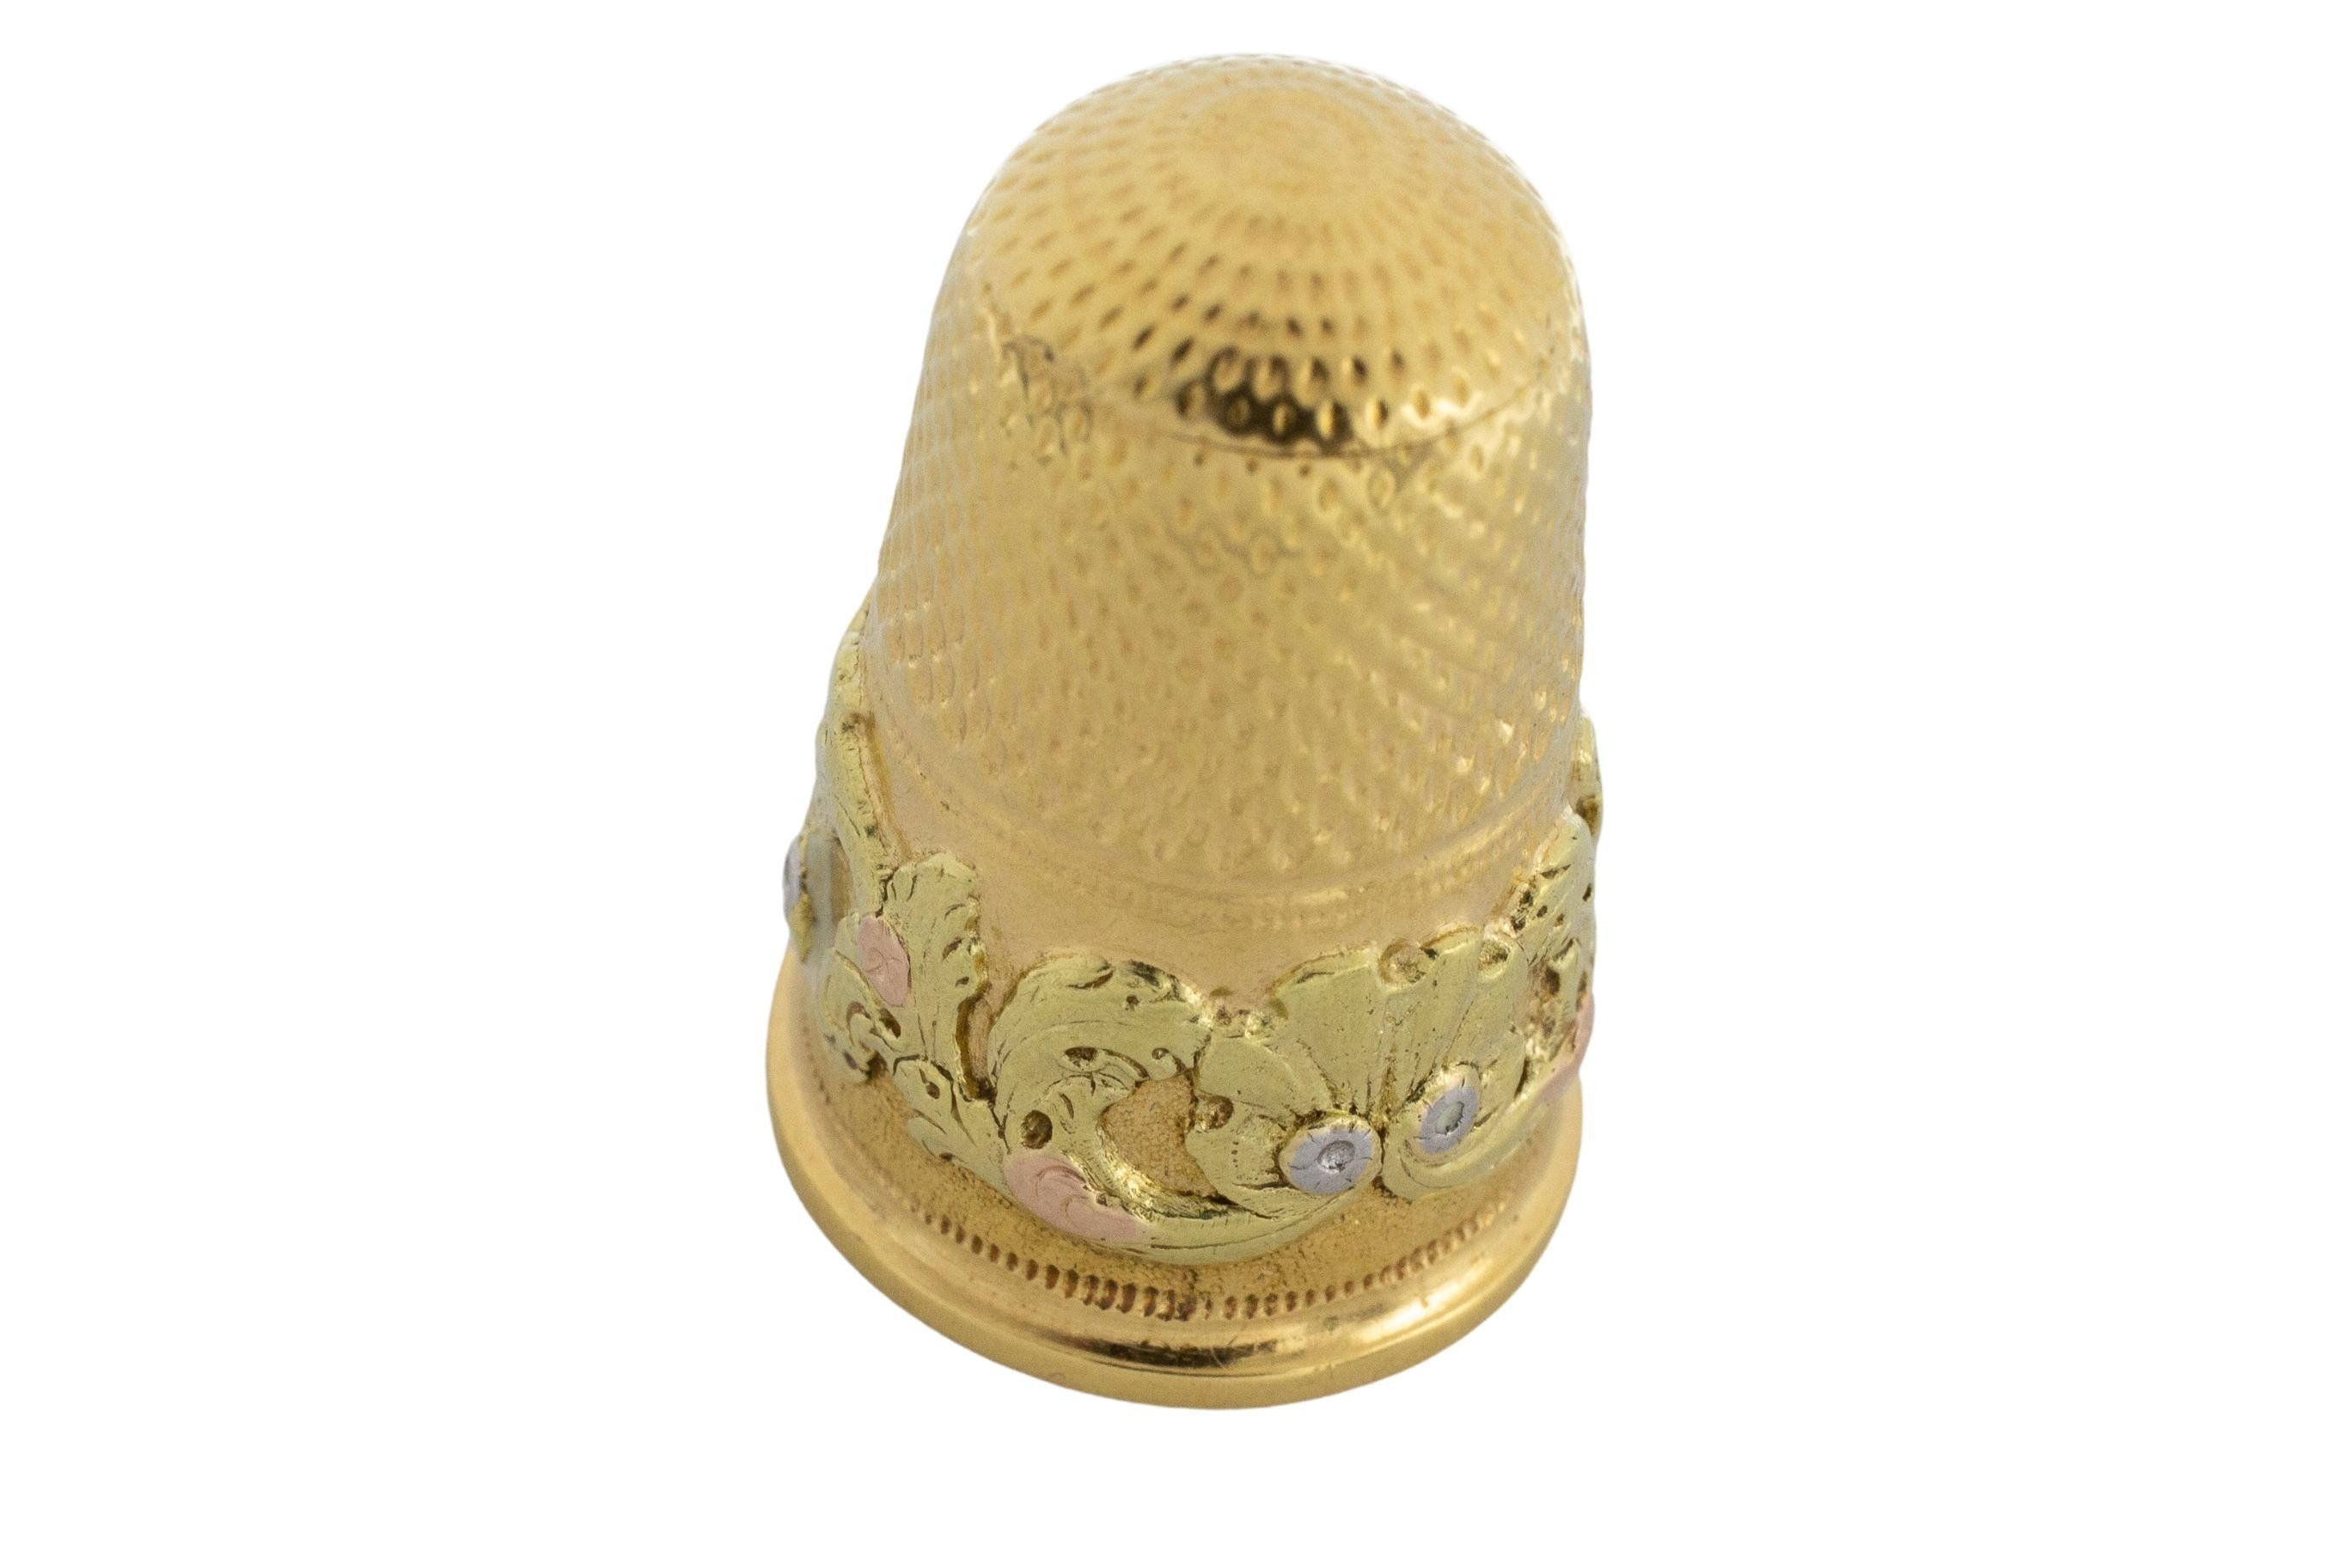 Superb Antique Victorian 18 Karat Gold Thimble - Antique Sage